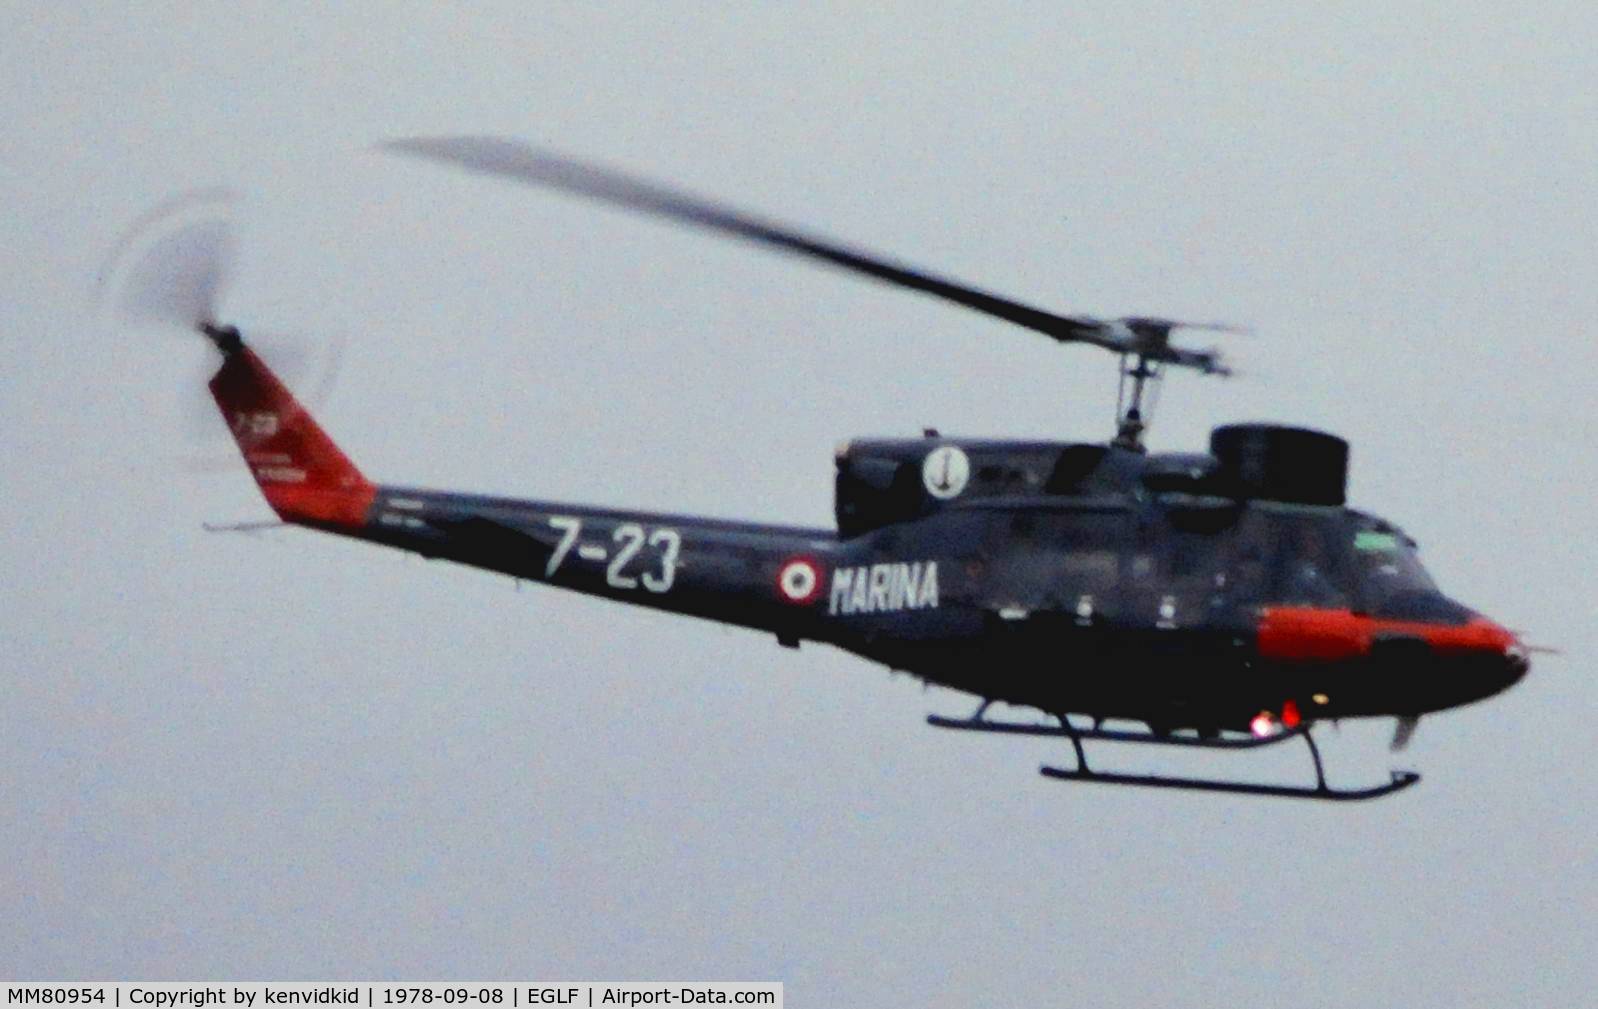 MM80954, Agusta AB-212 ASW C/N 5130, At Farnborough International 1978.